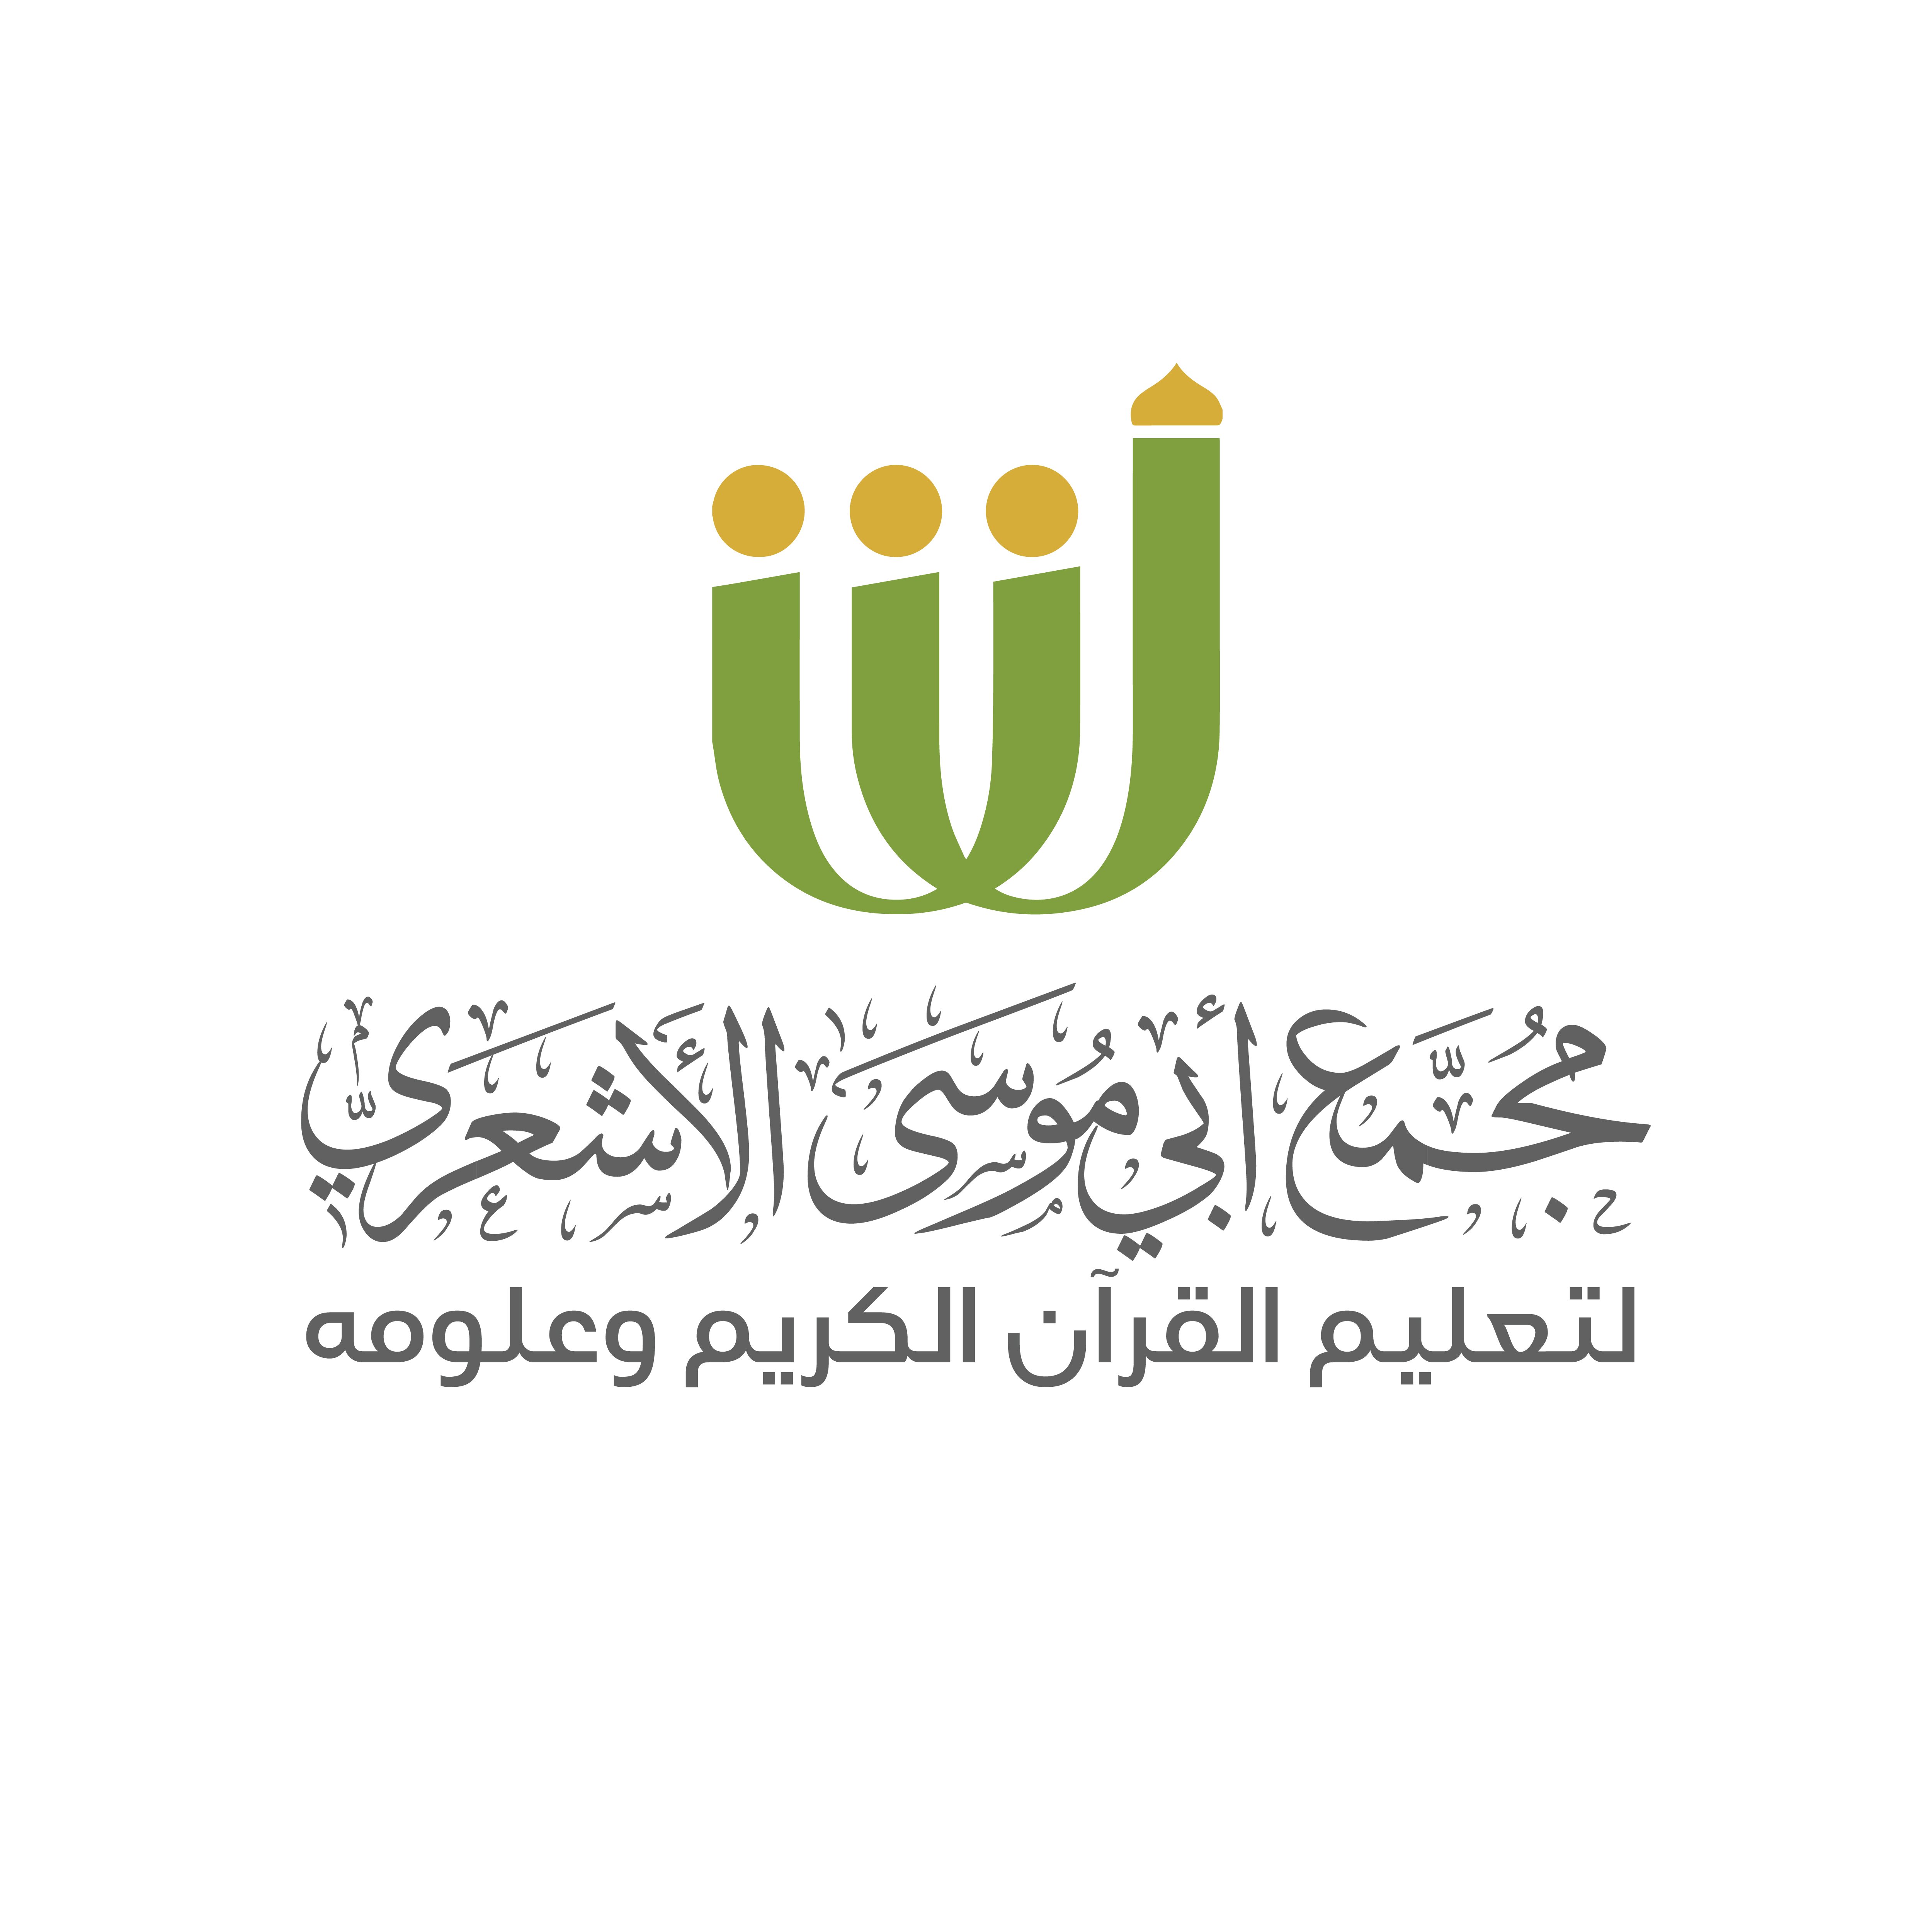 الجامعة الإسلامية تسجيل الدخول